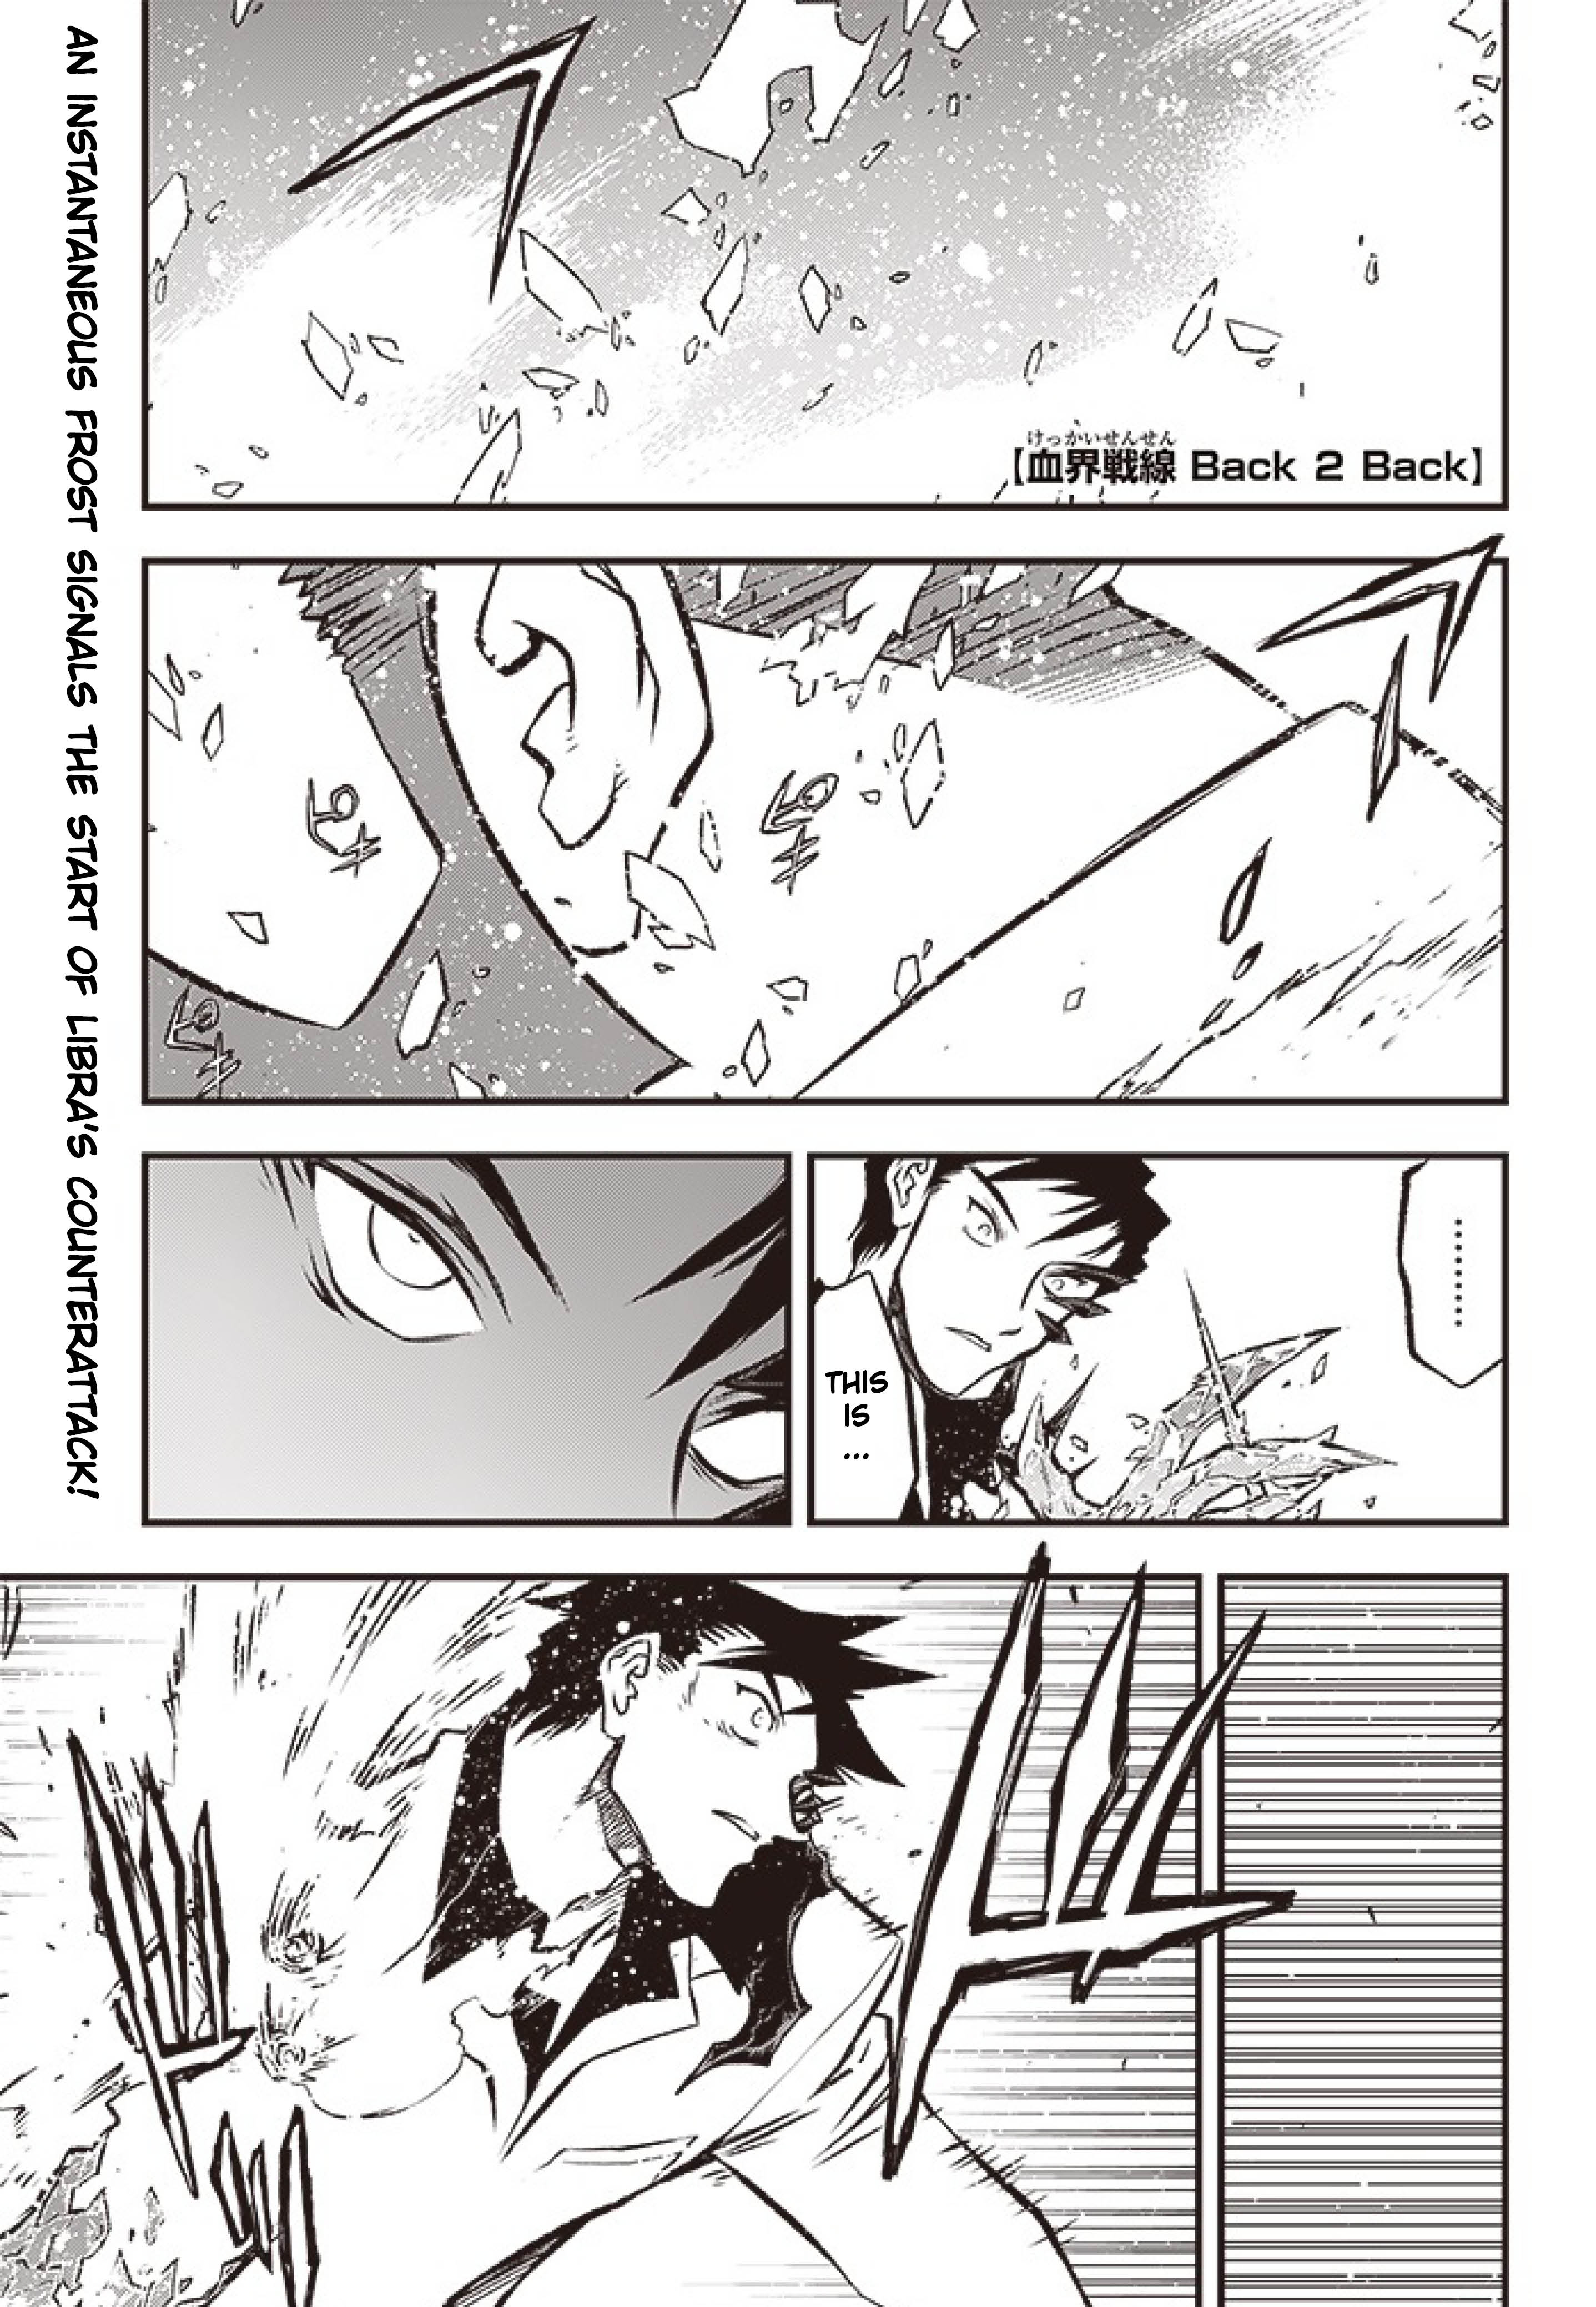 Kekkai Sensen - Back 2 Back - Page 2